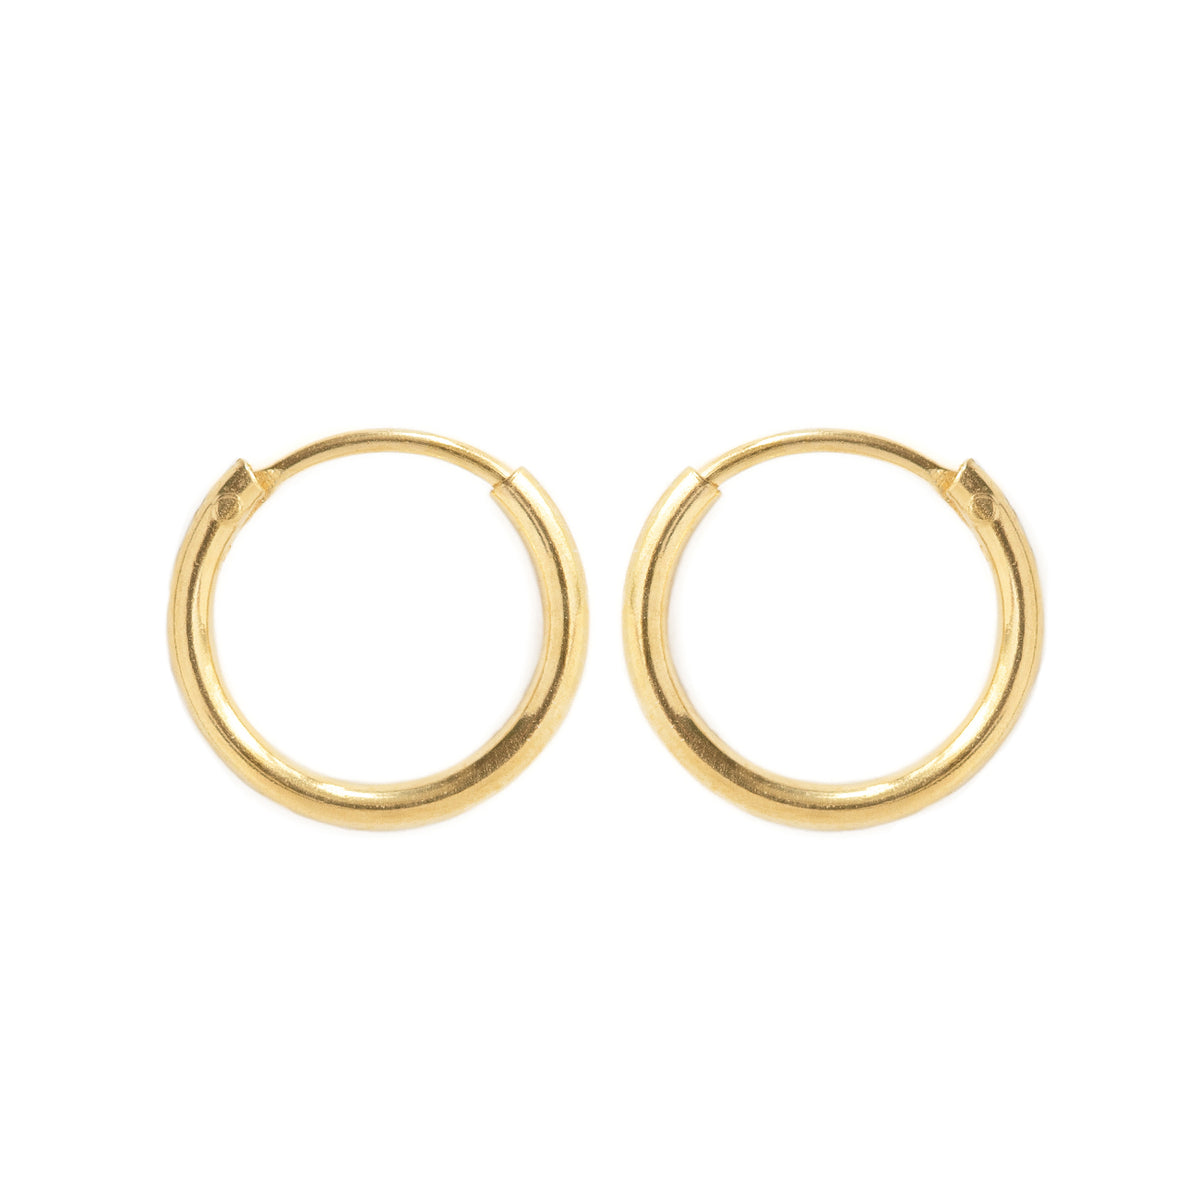 Thin Gold Hoop Earrings, Huggie Earrings, Gold Earrings – AMYO Jewelry